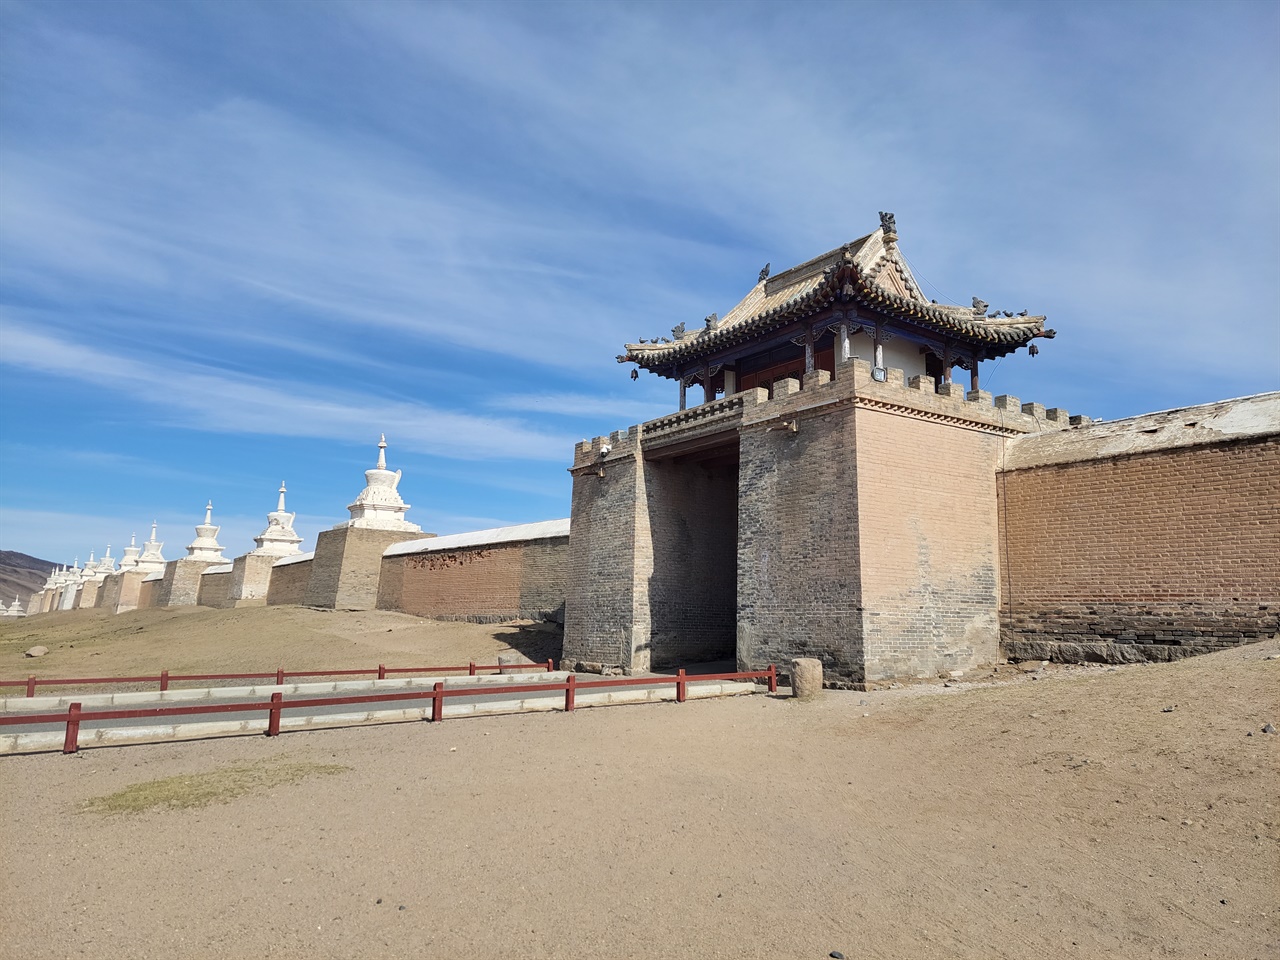 몽골 건축의 미와 상당한 규모를 자랑하는 에르덴조 사원의 모습